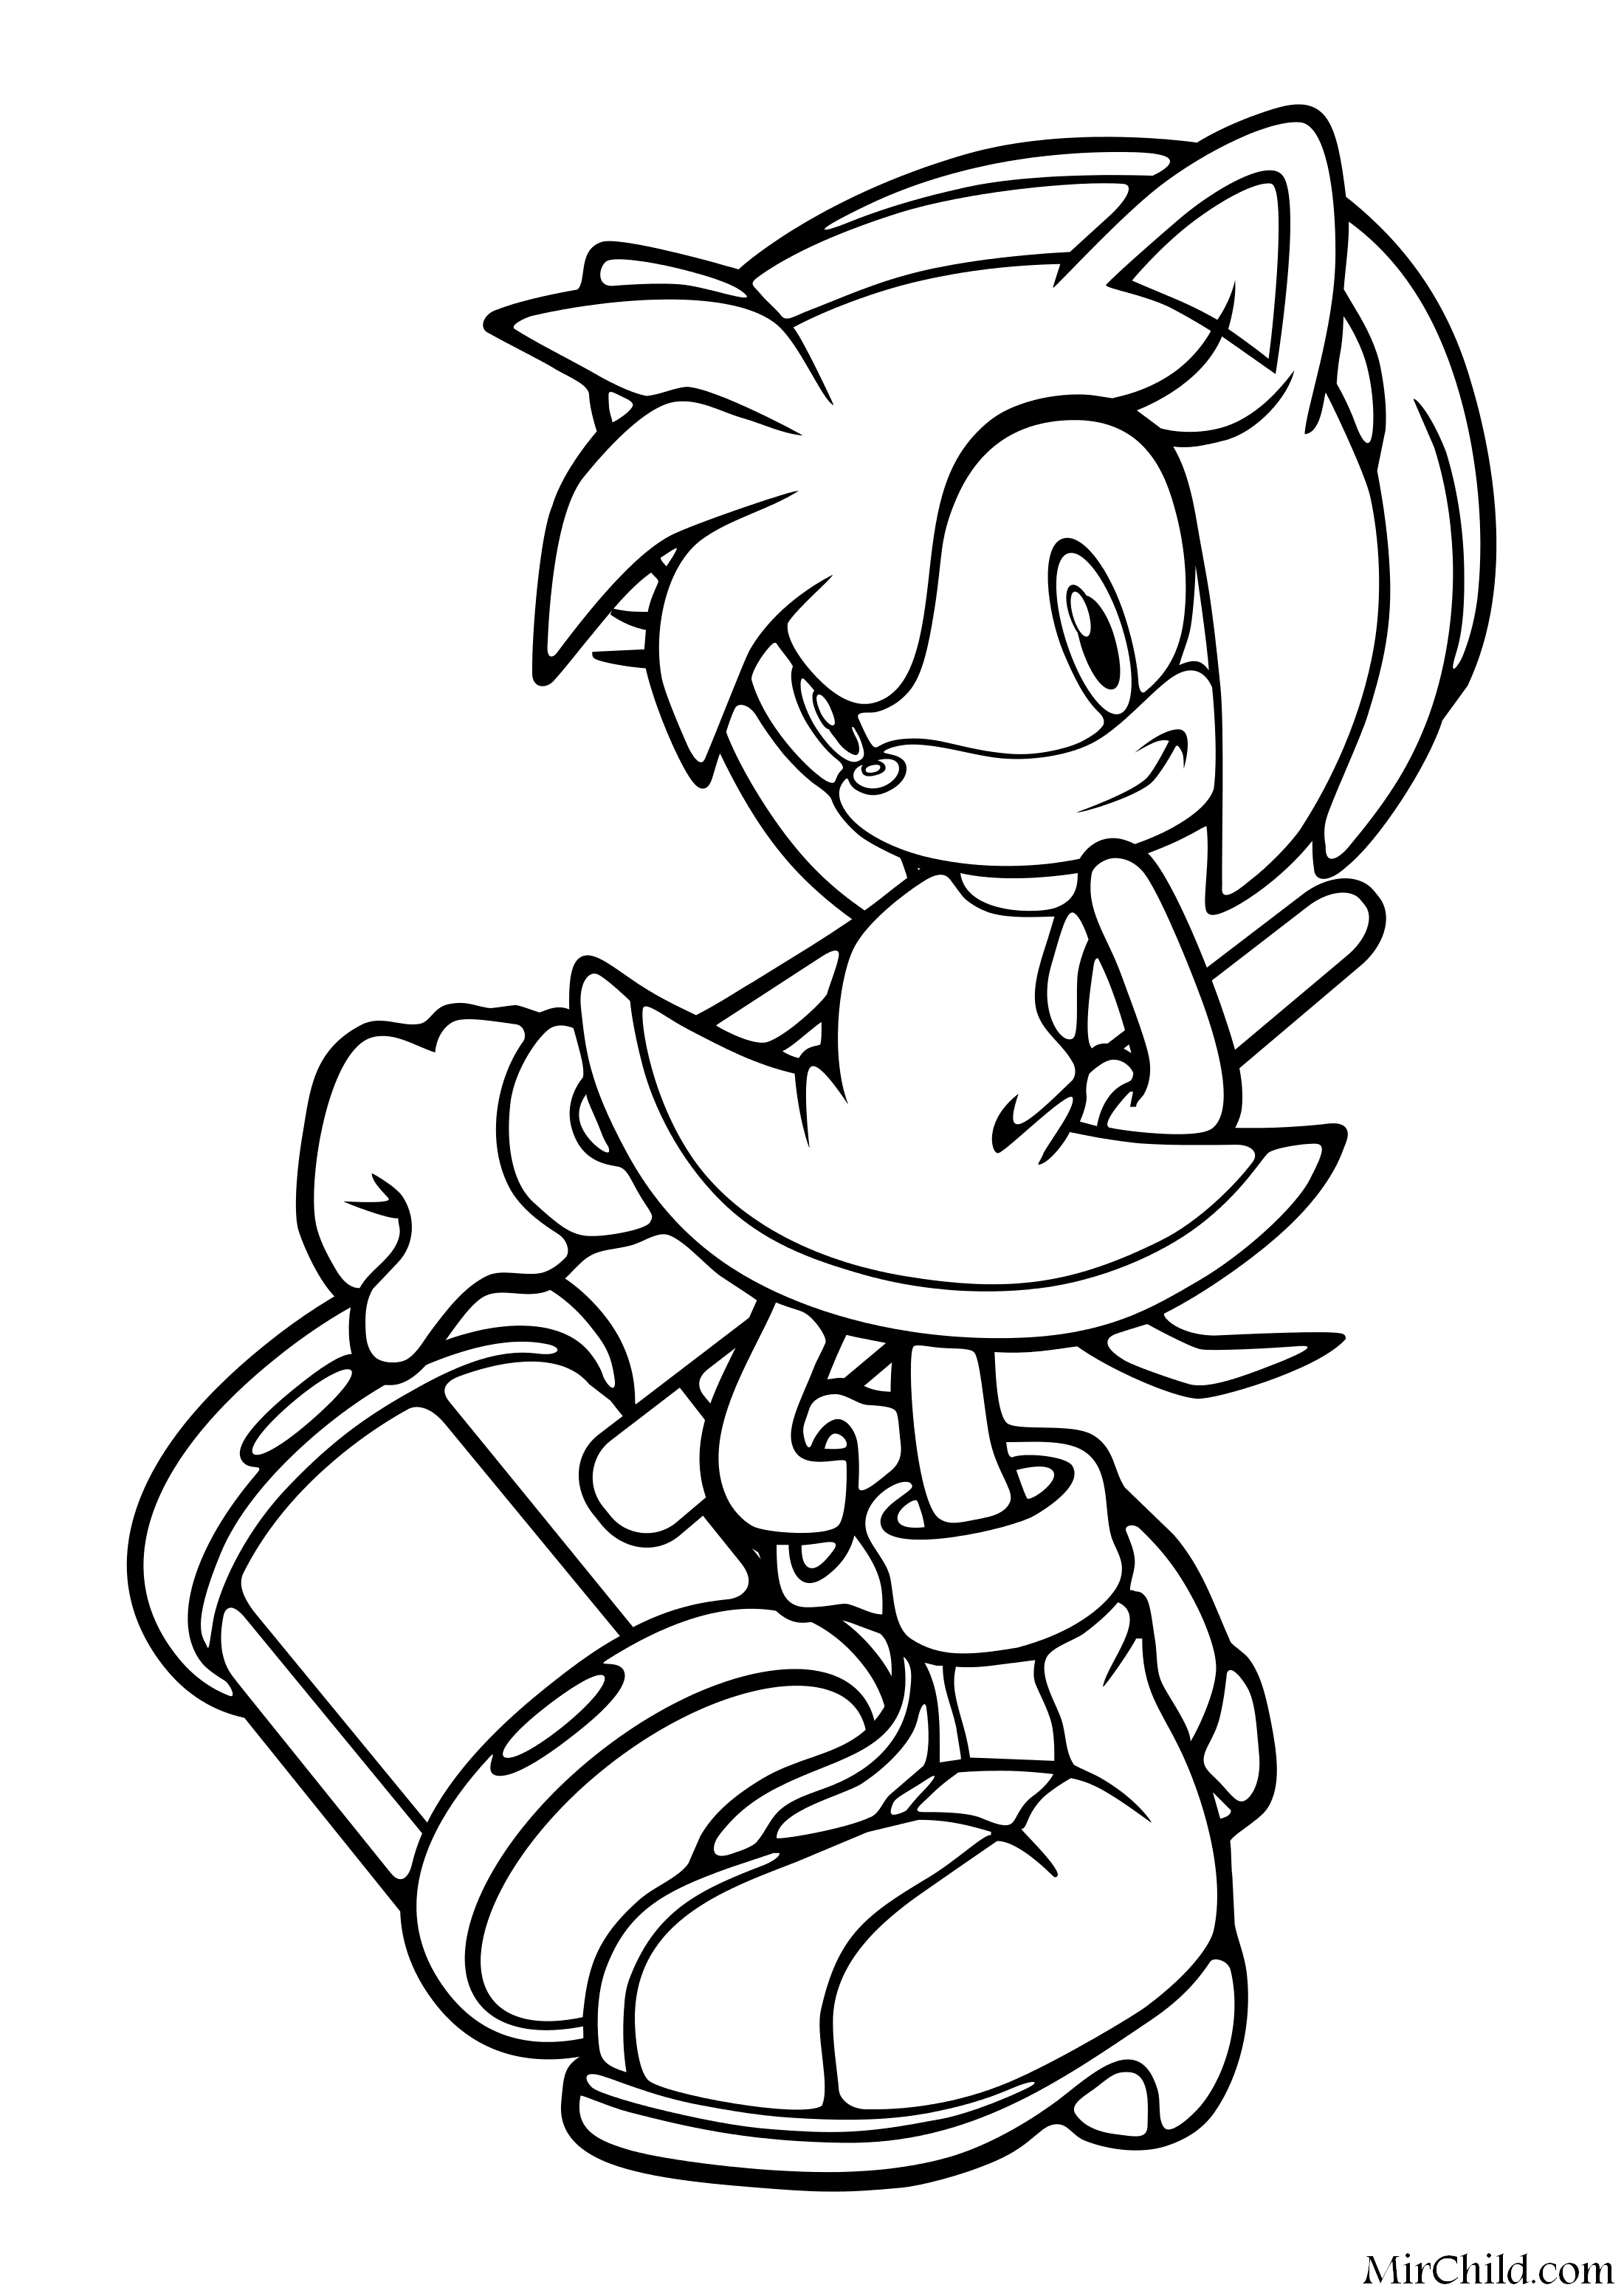 Раскраска - Sonic the Hedgehog - Эми Роуз с молотом Пико-Пико.